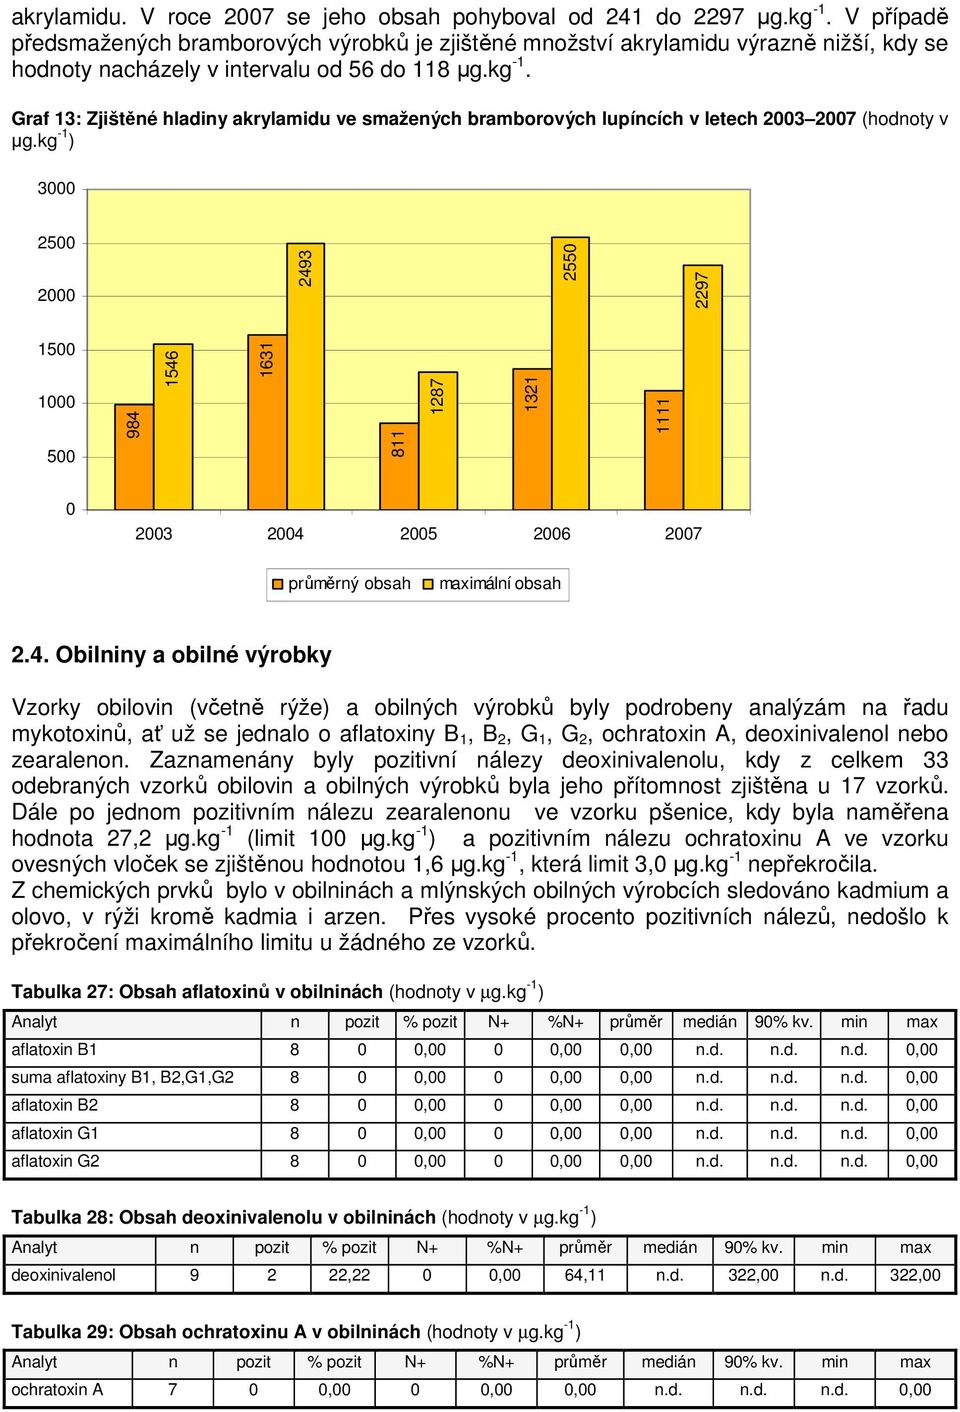 Graf 13: Zjištěné hladiny akrylamidu ve smažených bramborových lupíncích v letech 2003 2007 (hodnoty v µg.